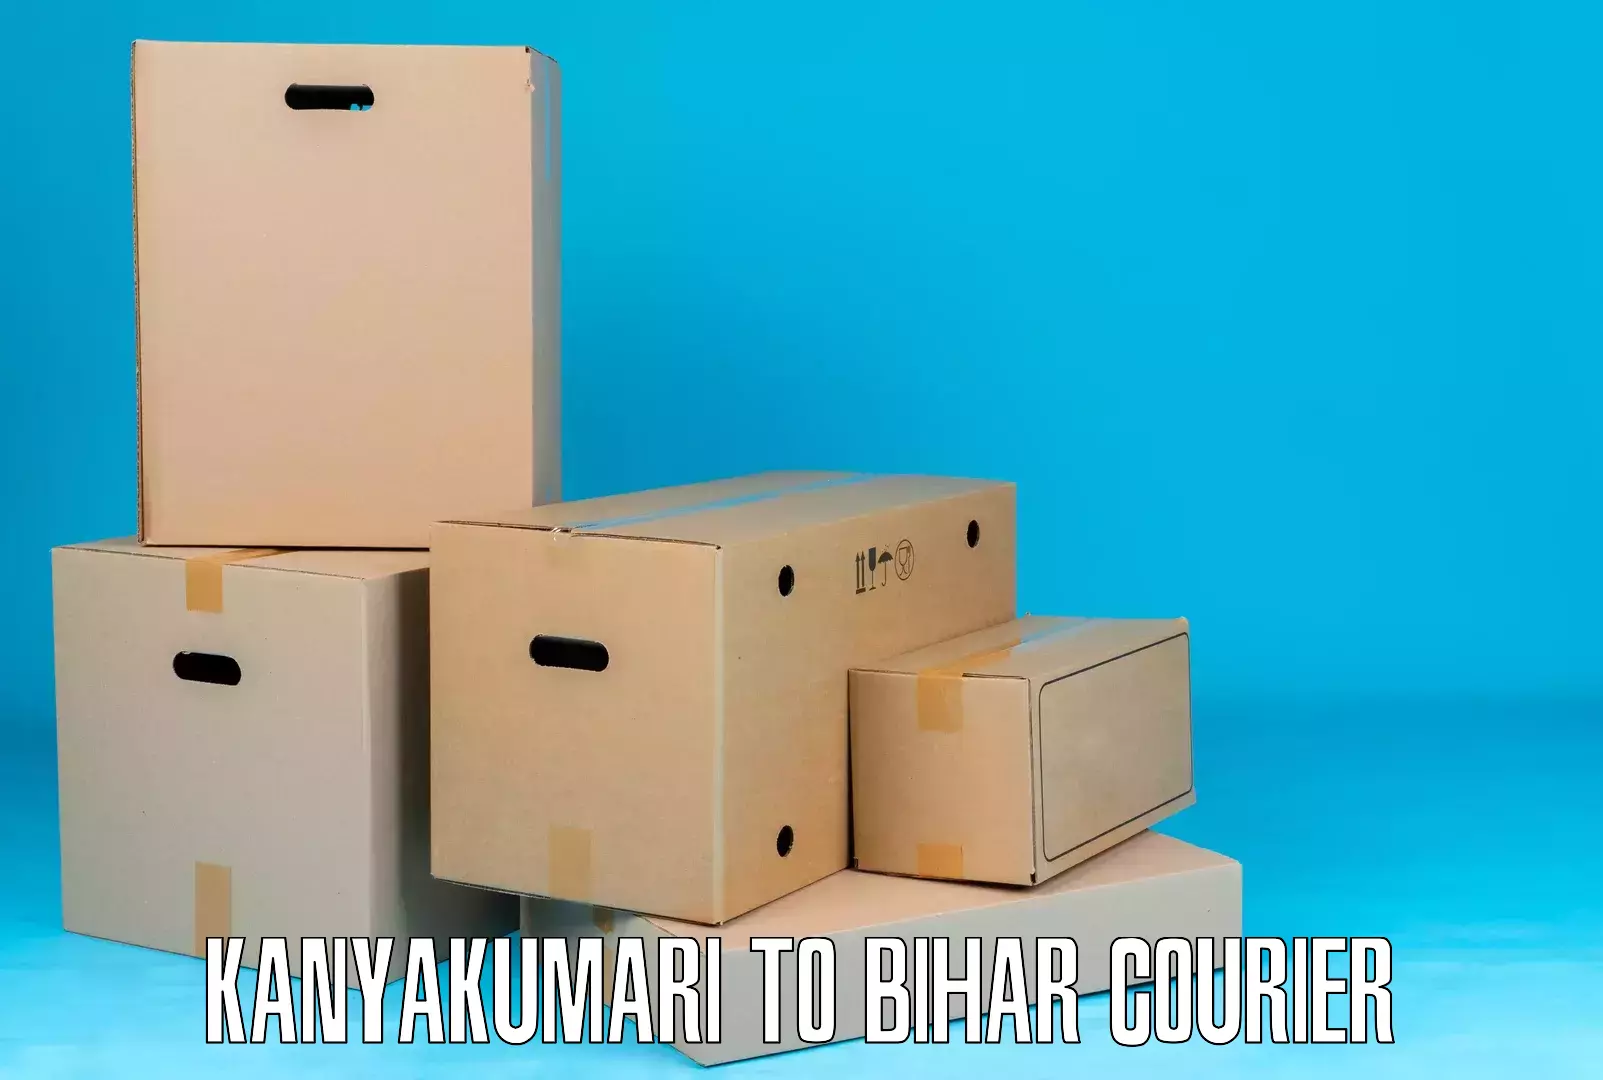 Global courier networks Kanyakumari to Hasanpura